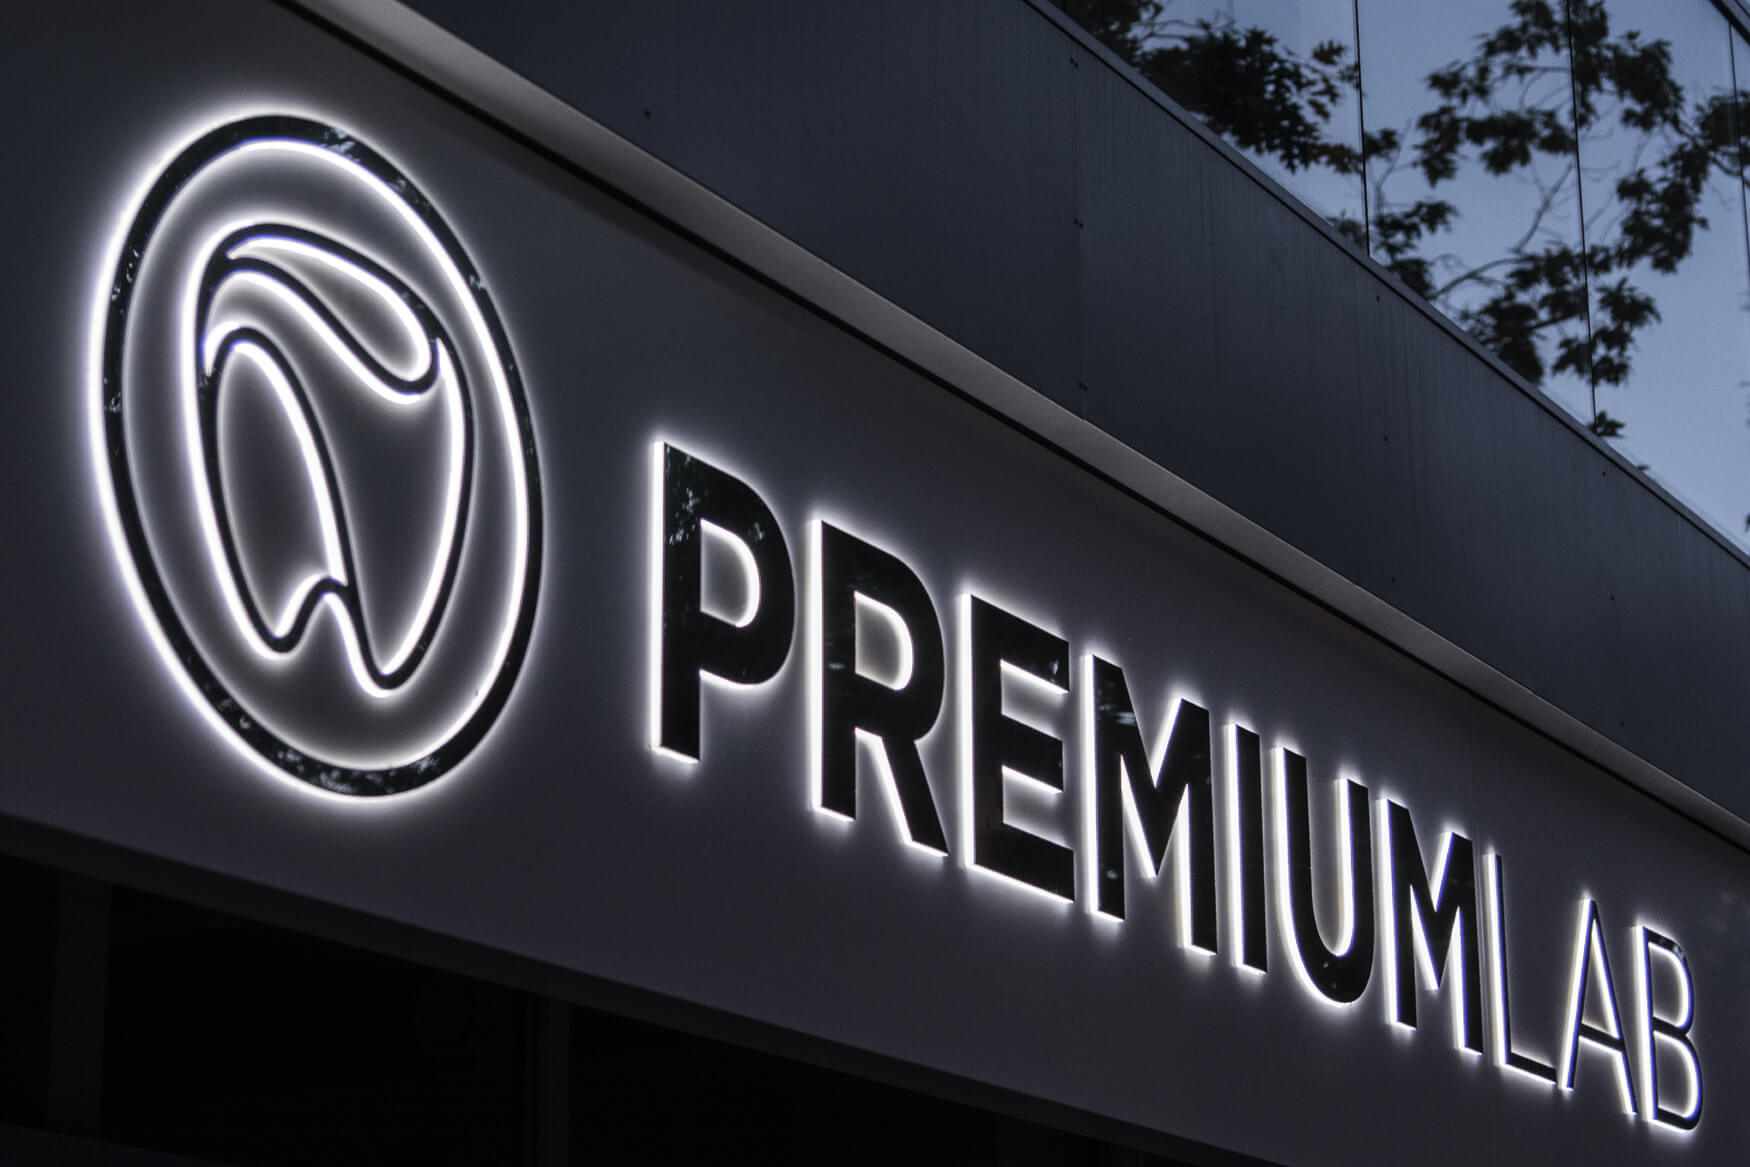 Premiumlab - Premiumlab - rótulo de empresa colocado sobre un cofre publicitario con letras de chapa espacial